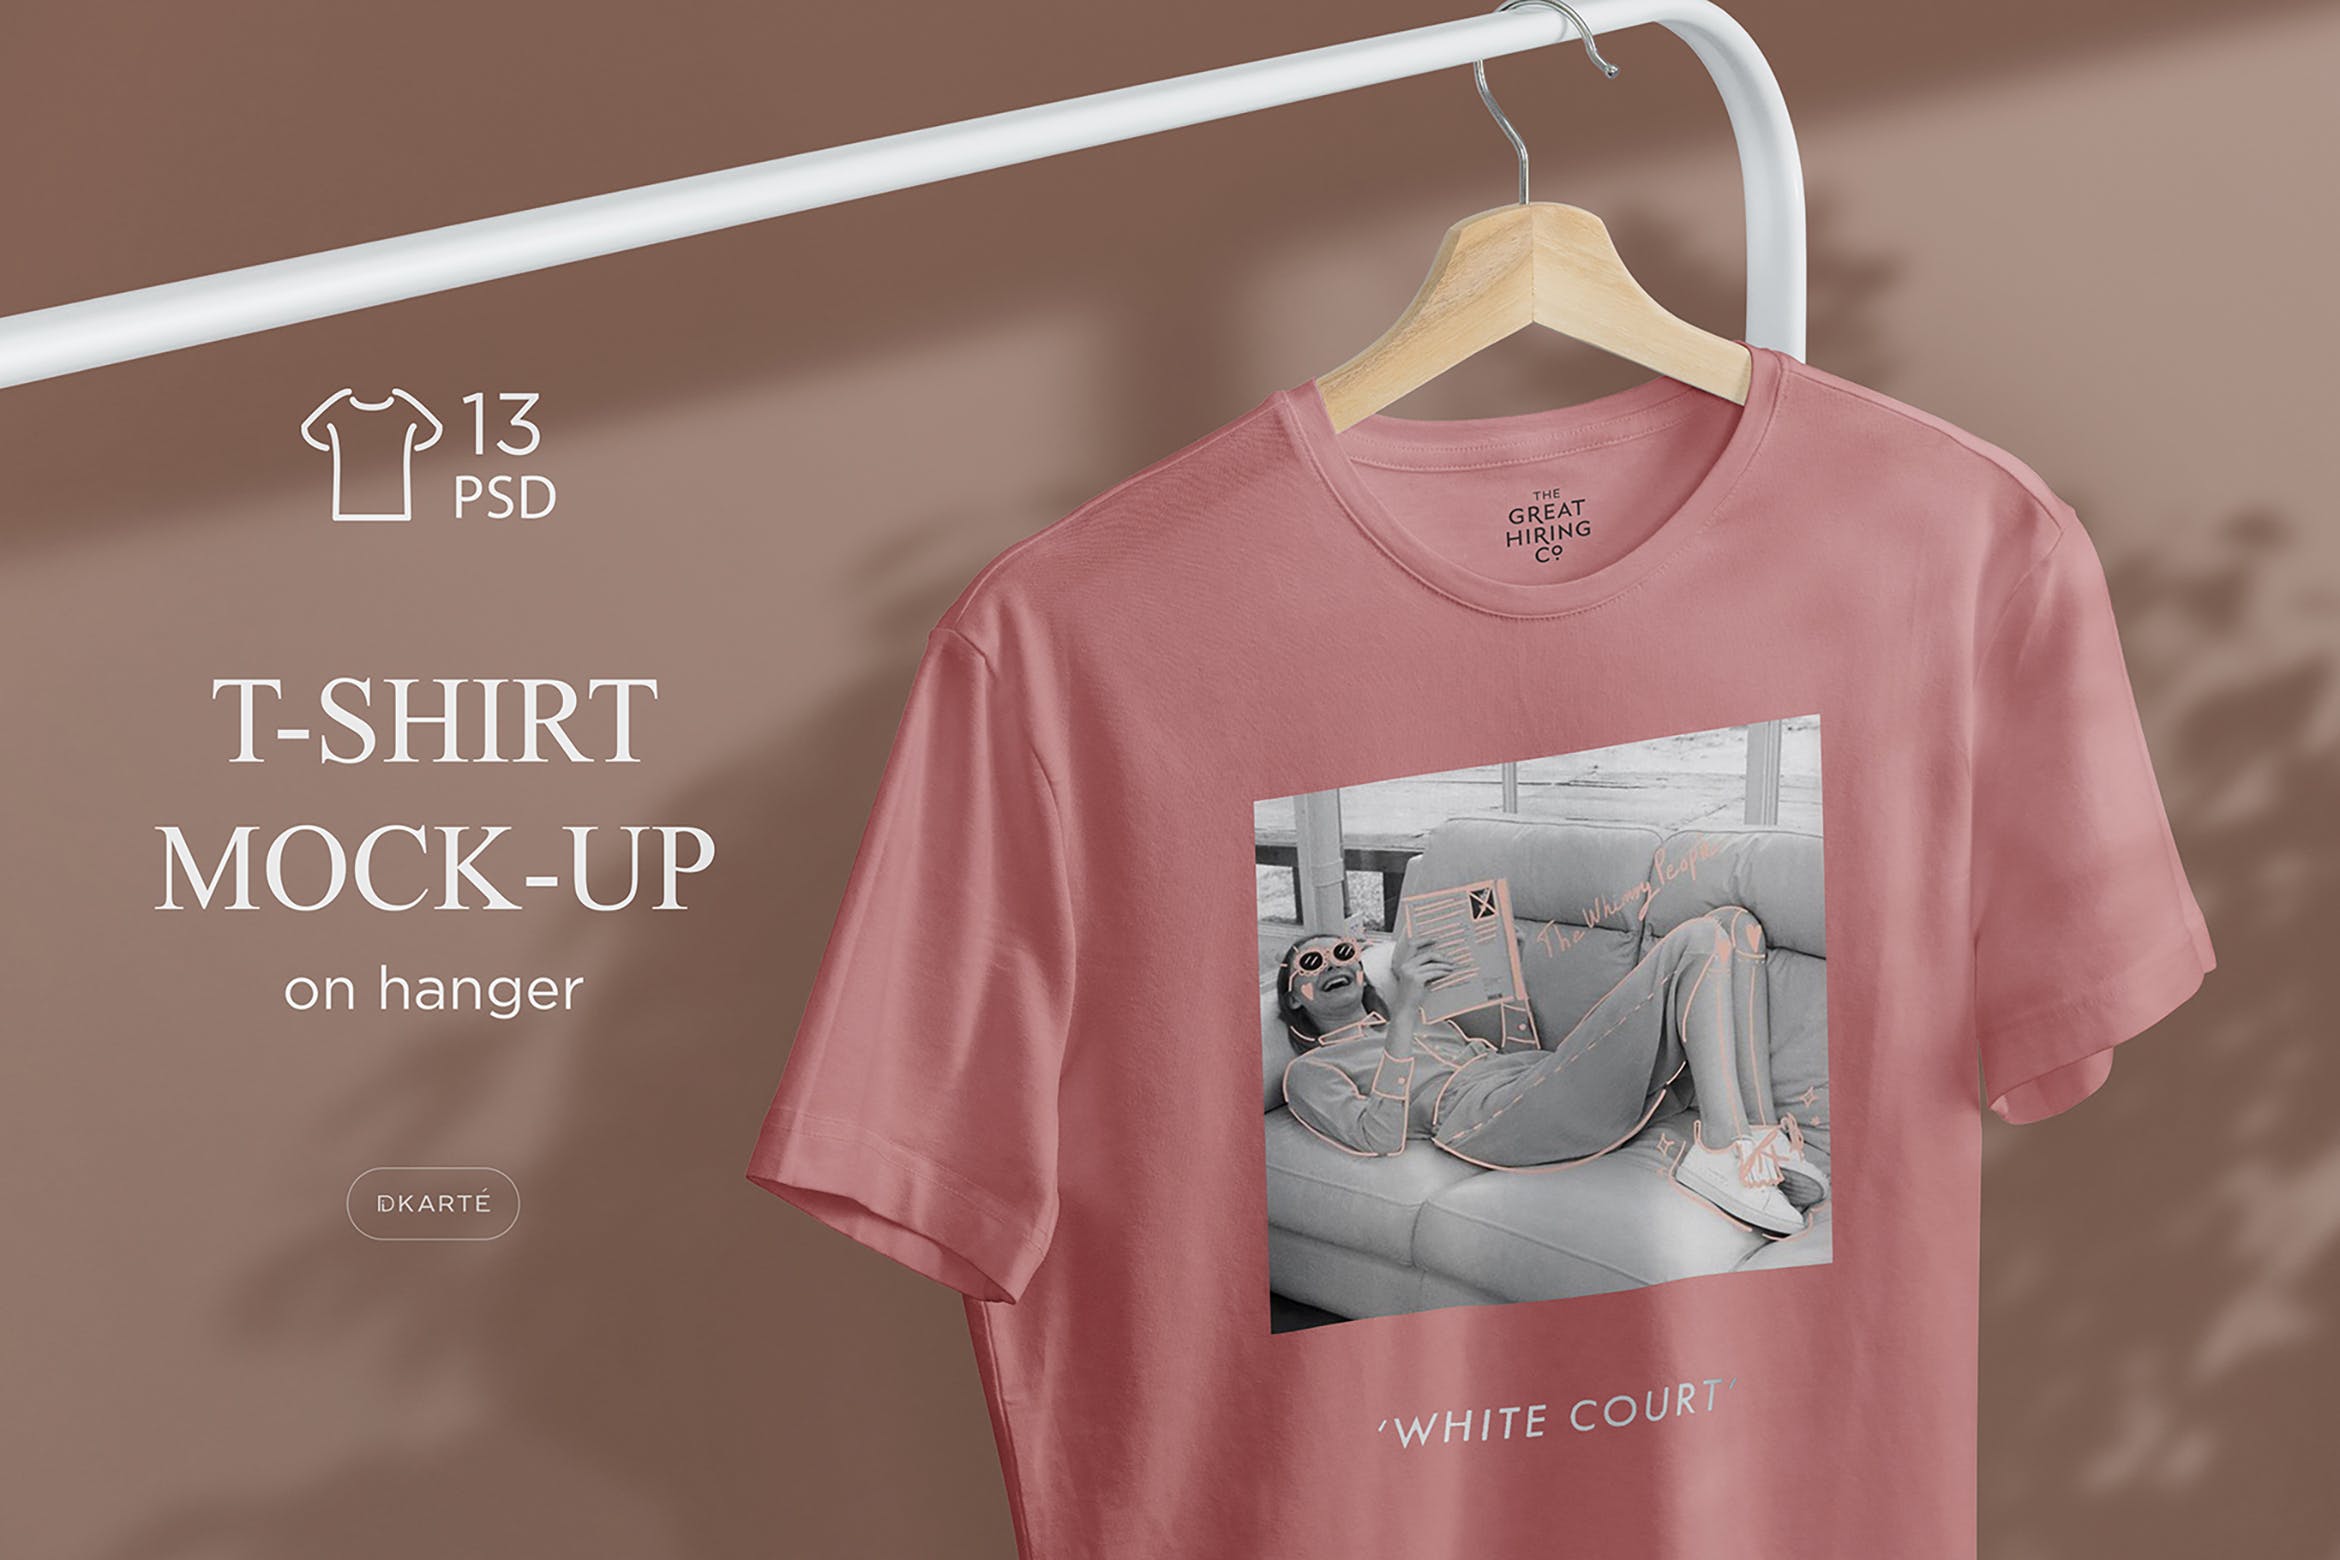 简易晾衣架T恤设计效果图样机第一素材精选 T-Shirt Mock-Up on Hanger插图